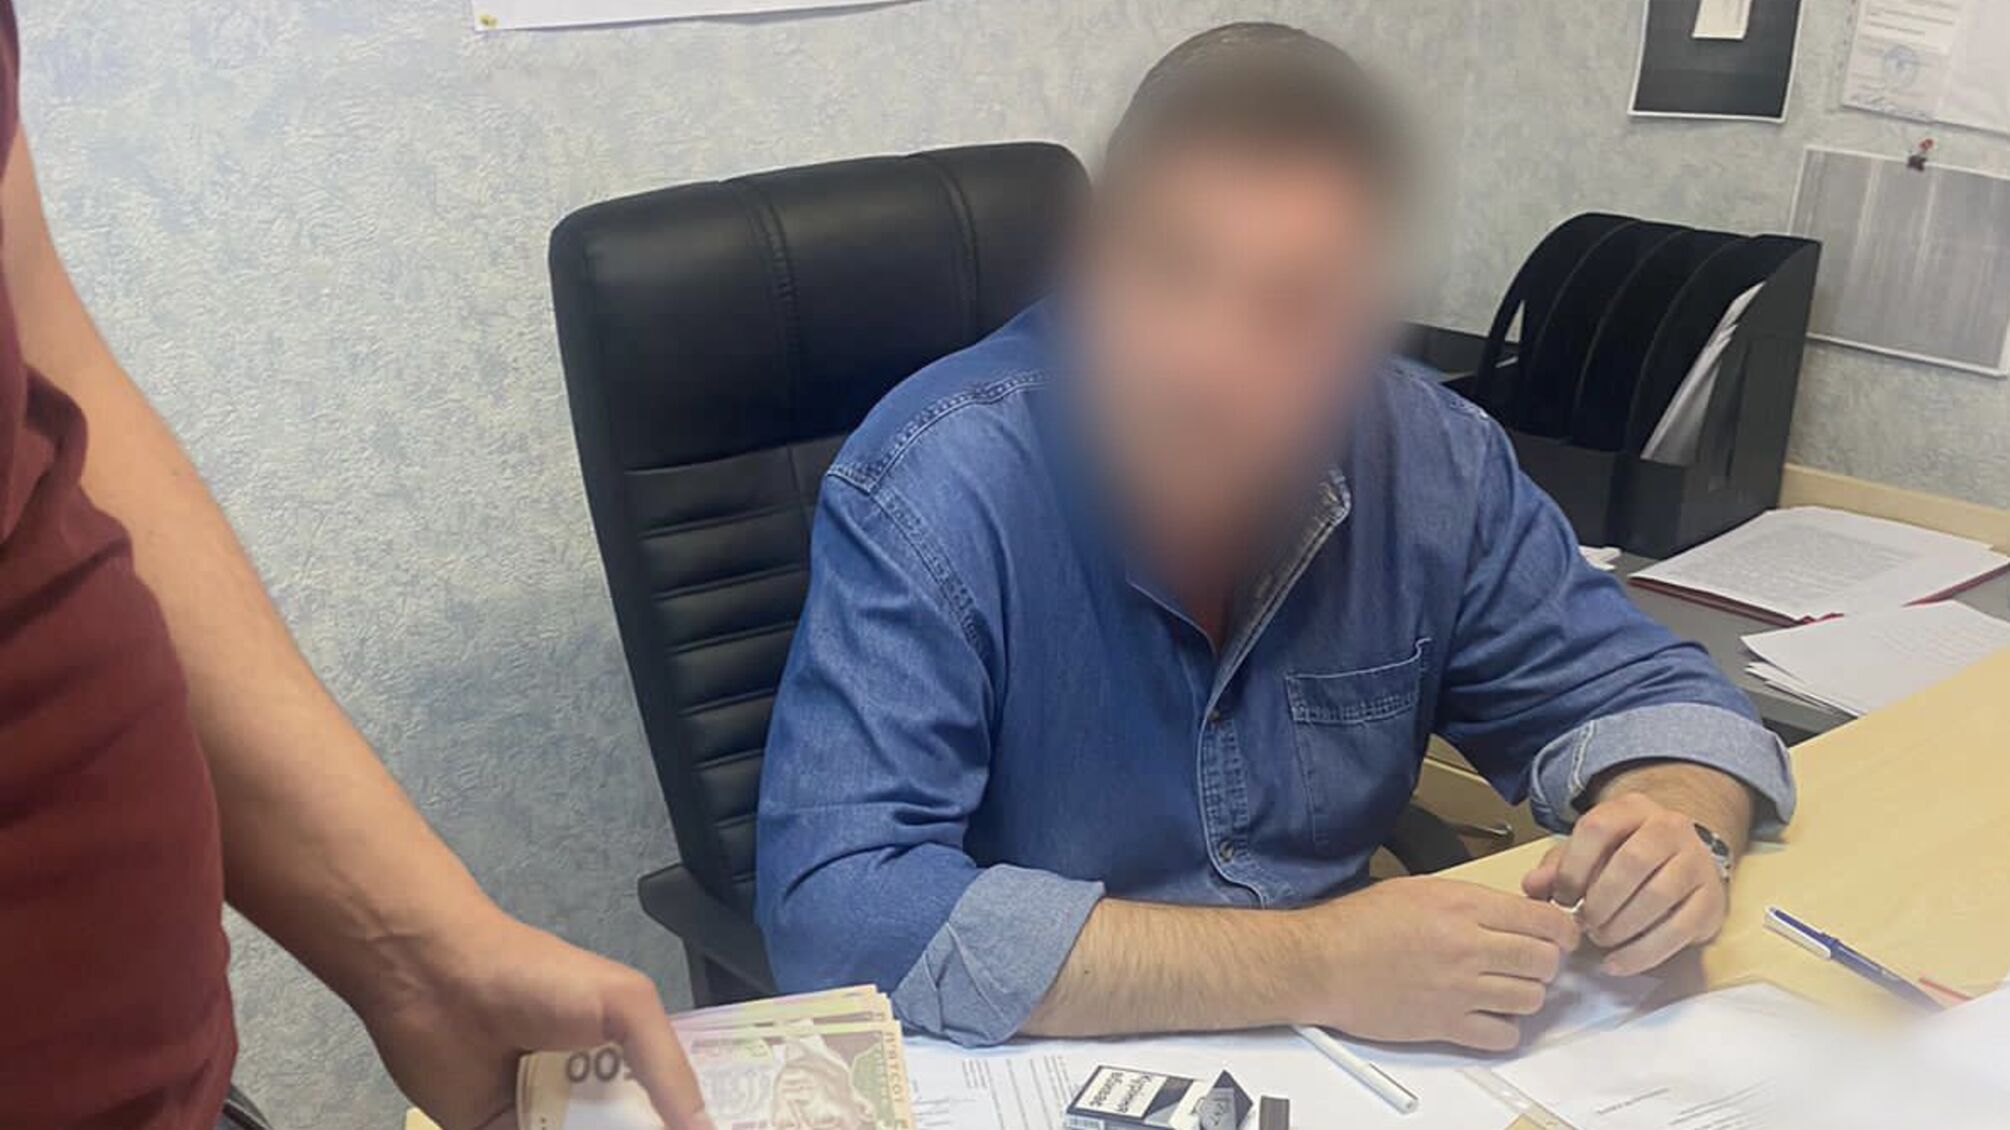 Хотел деньги за размещение каруселей, а получил - 'аниматоров' из прокуратуры: задержан директор 'Гидропарка'